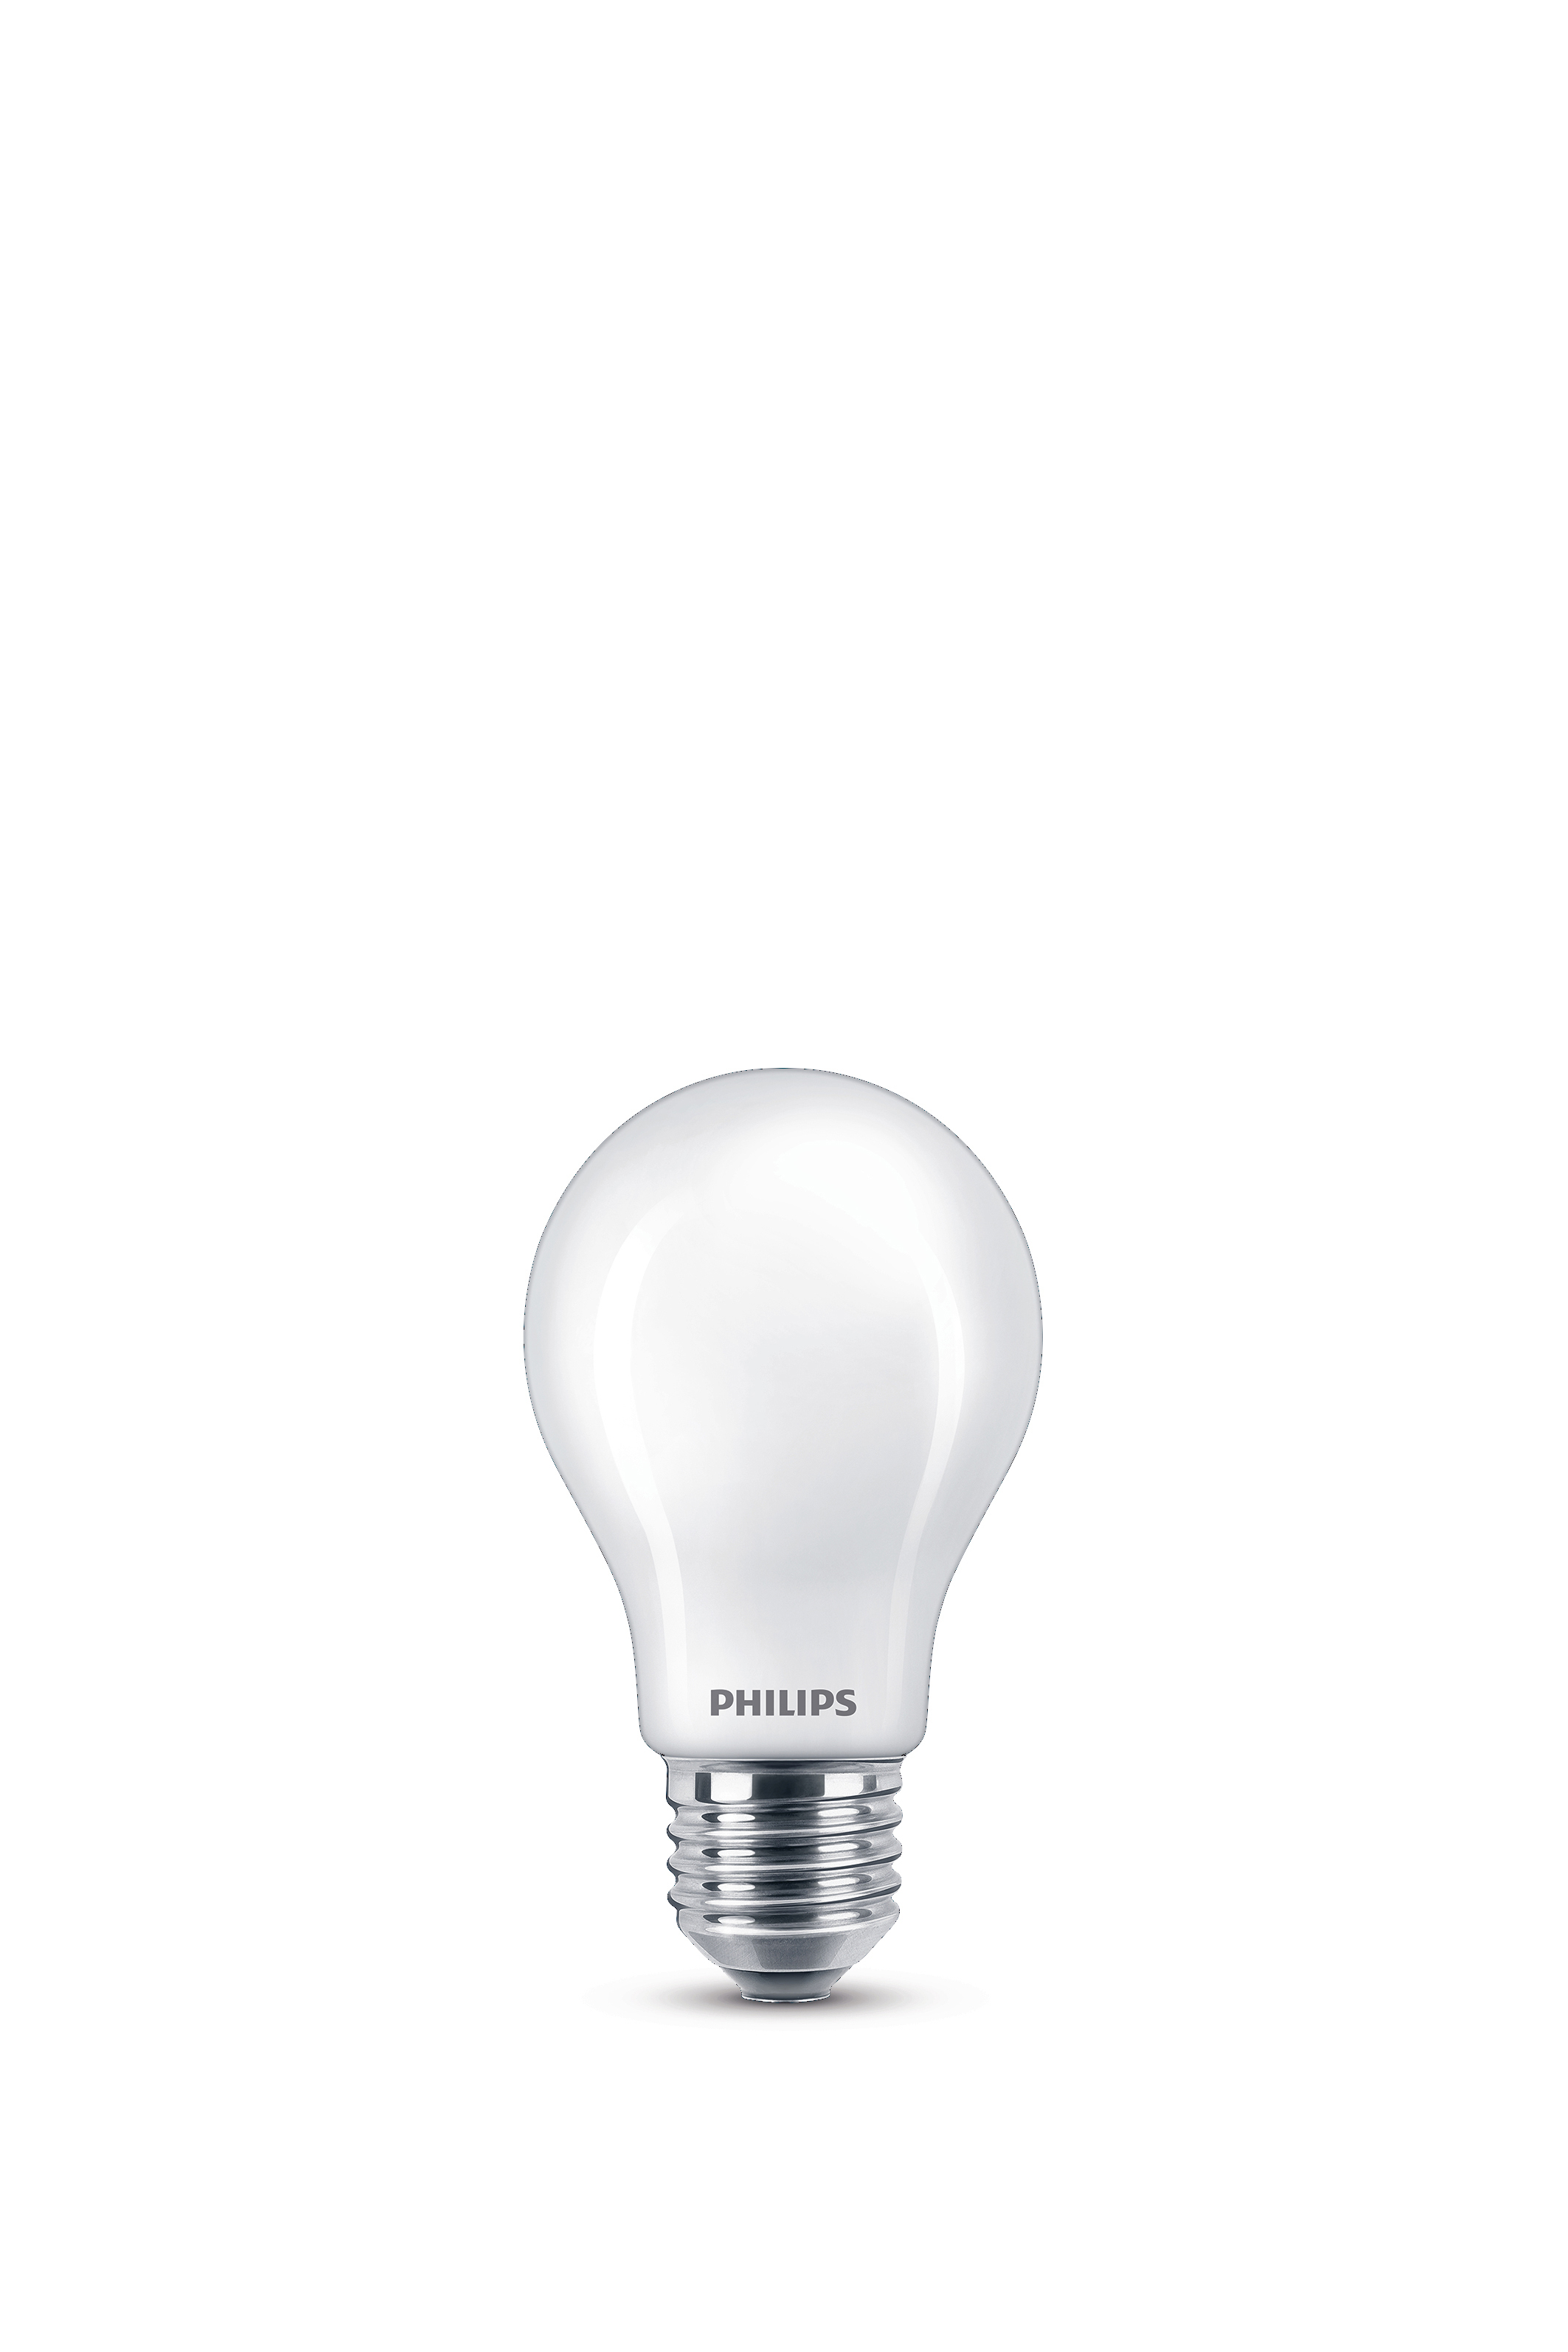 PHILIPS LEDclassic Lampe ersetzt 175W Lampe warmweiß LED